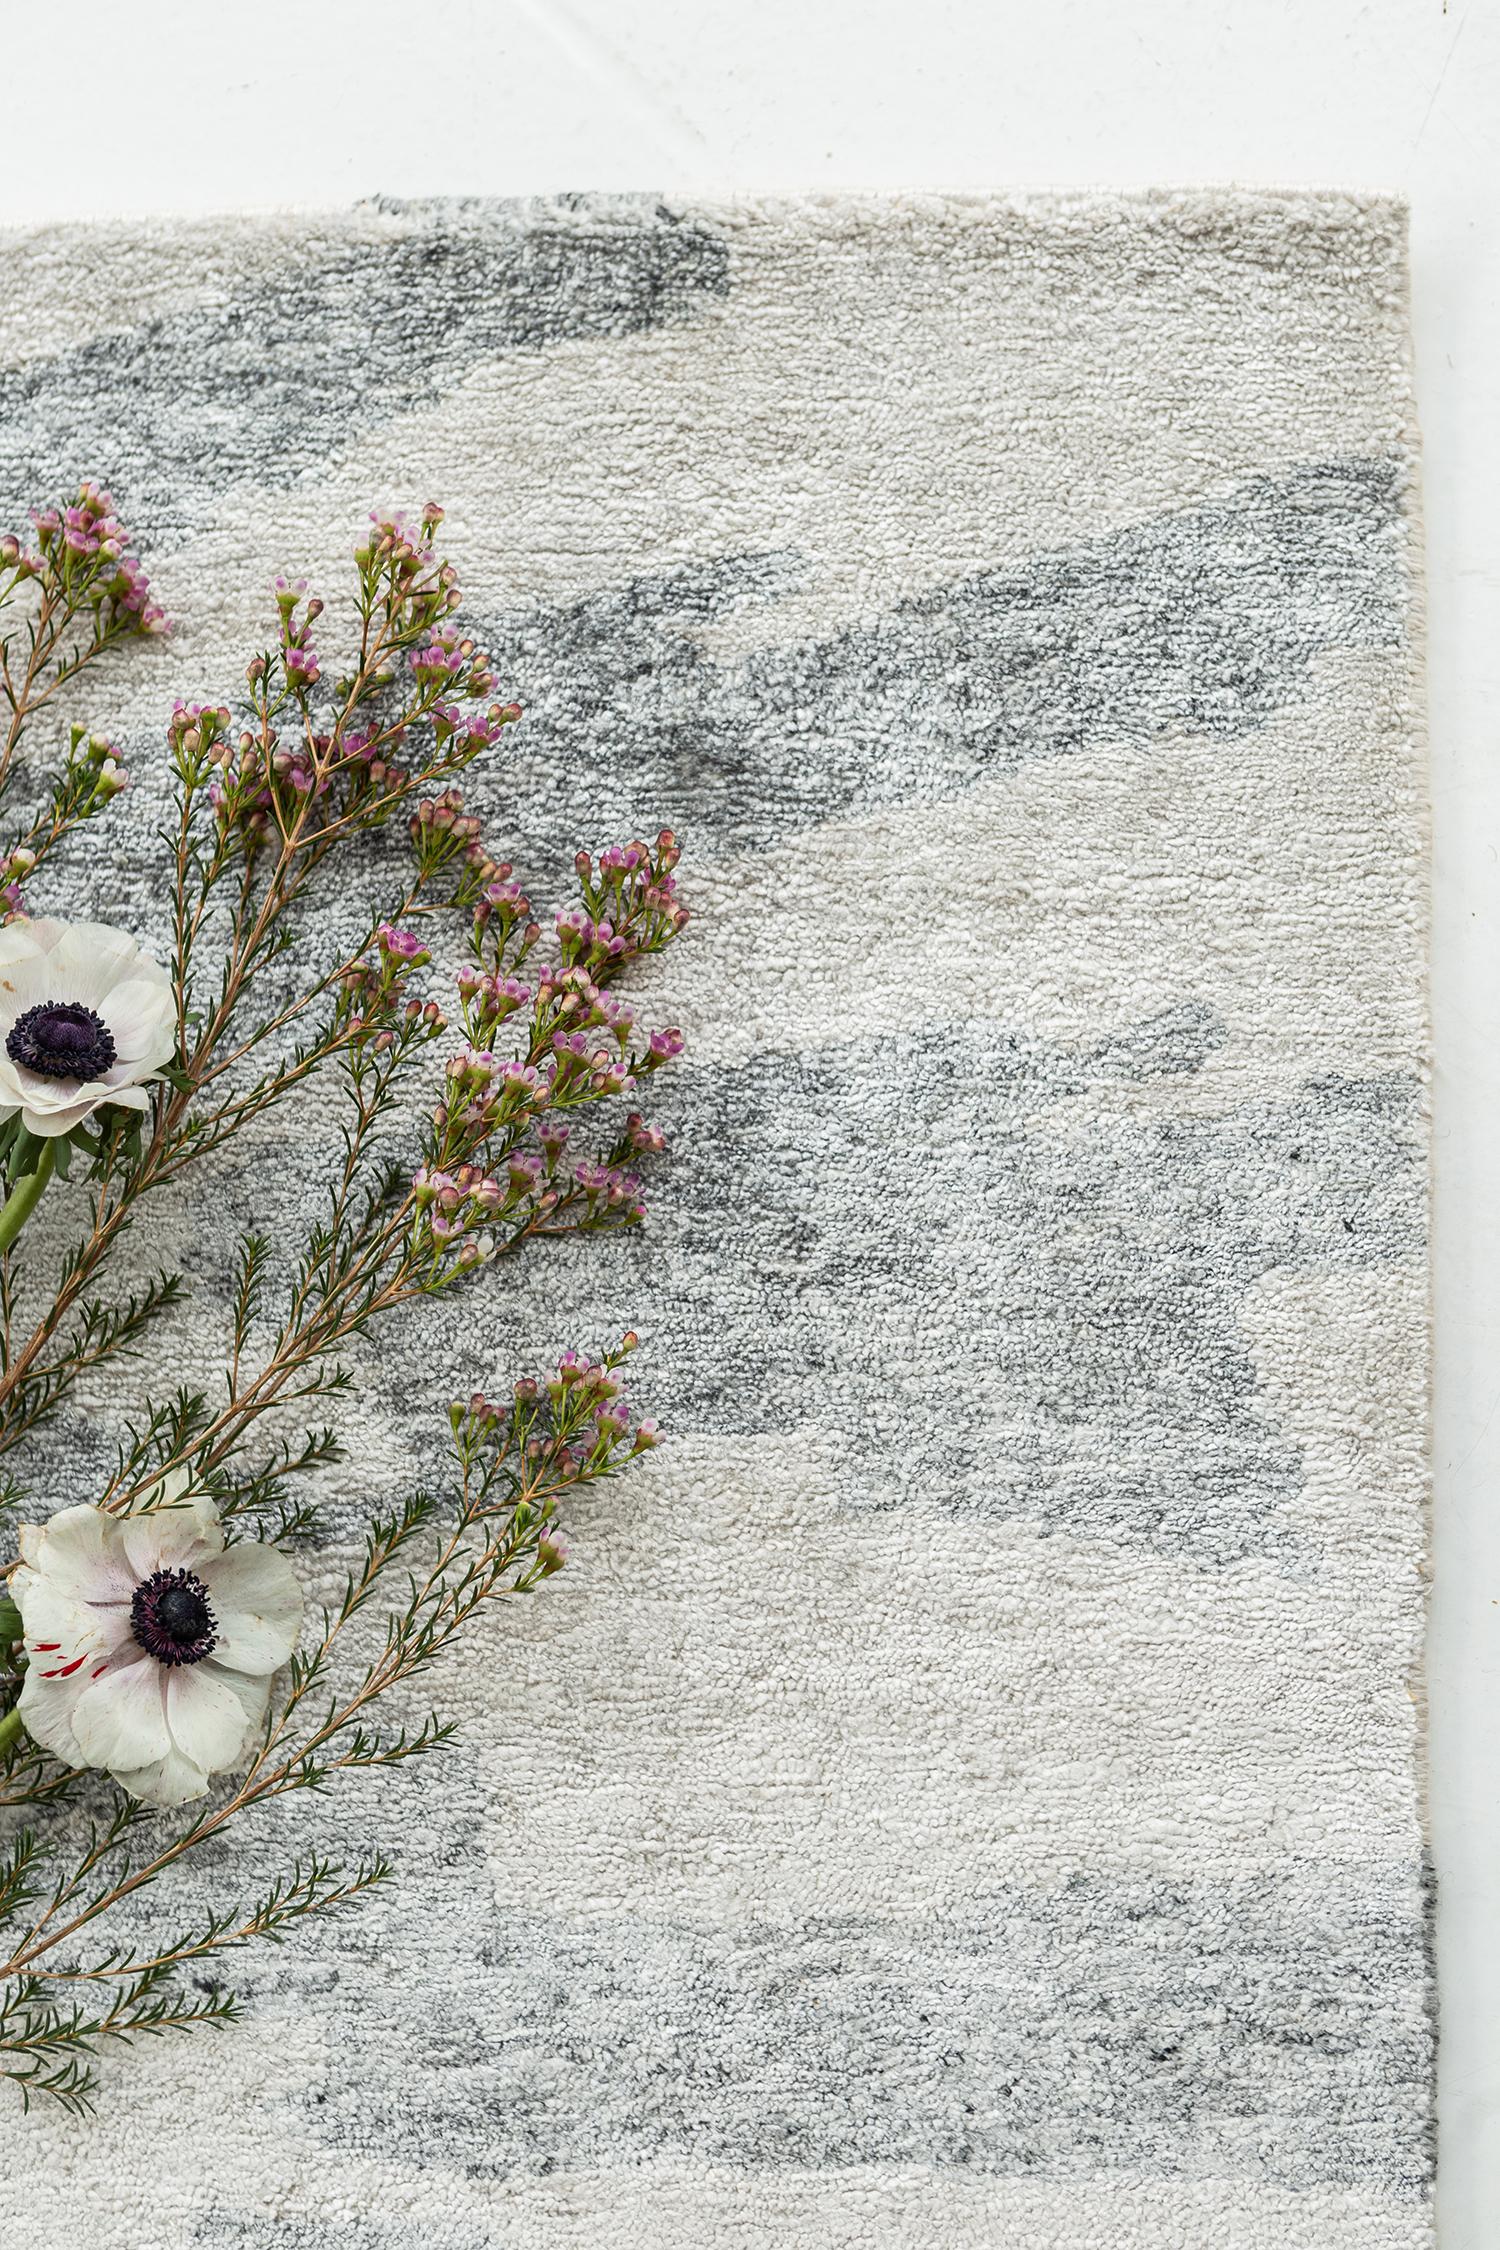 Erleben Sie den Frieden und die Harmonie der Natur mit Amabie aus der Yokai Collection. Dieser graue Seidenteppich zeichnet sich durch sanfte, natürliche Farbtöne und eine erdige Struktur aus. Verwenden Sie es in Ihrer modernen Inneneinrichtung, um